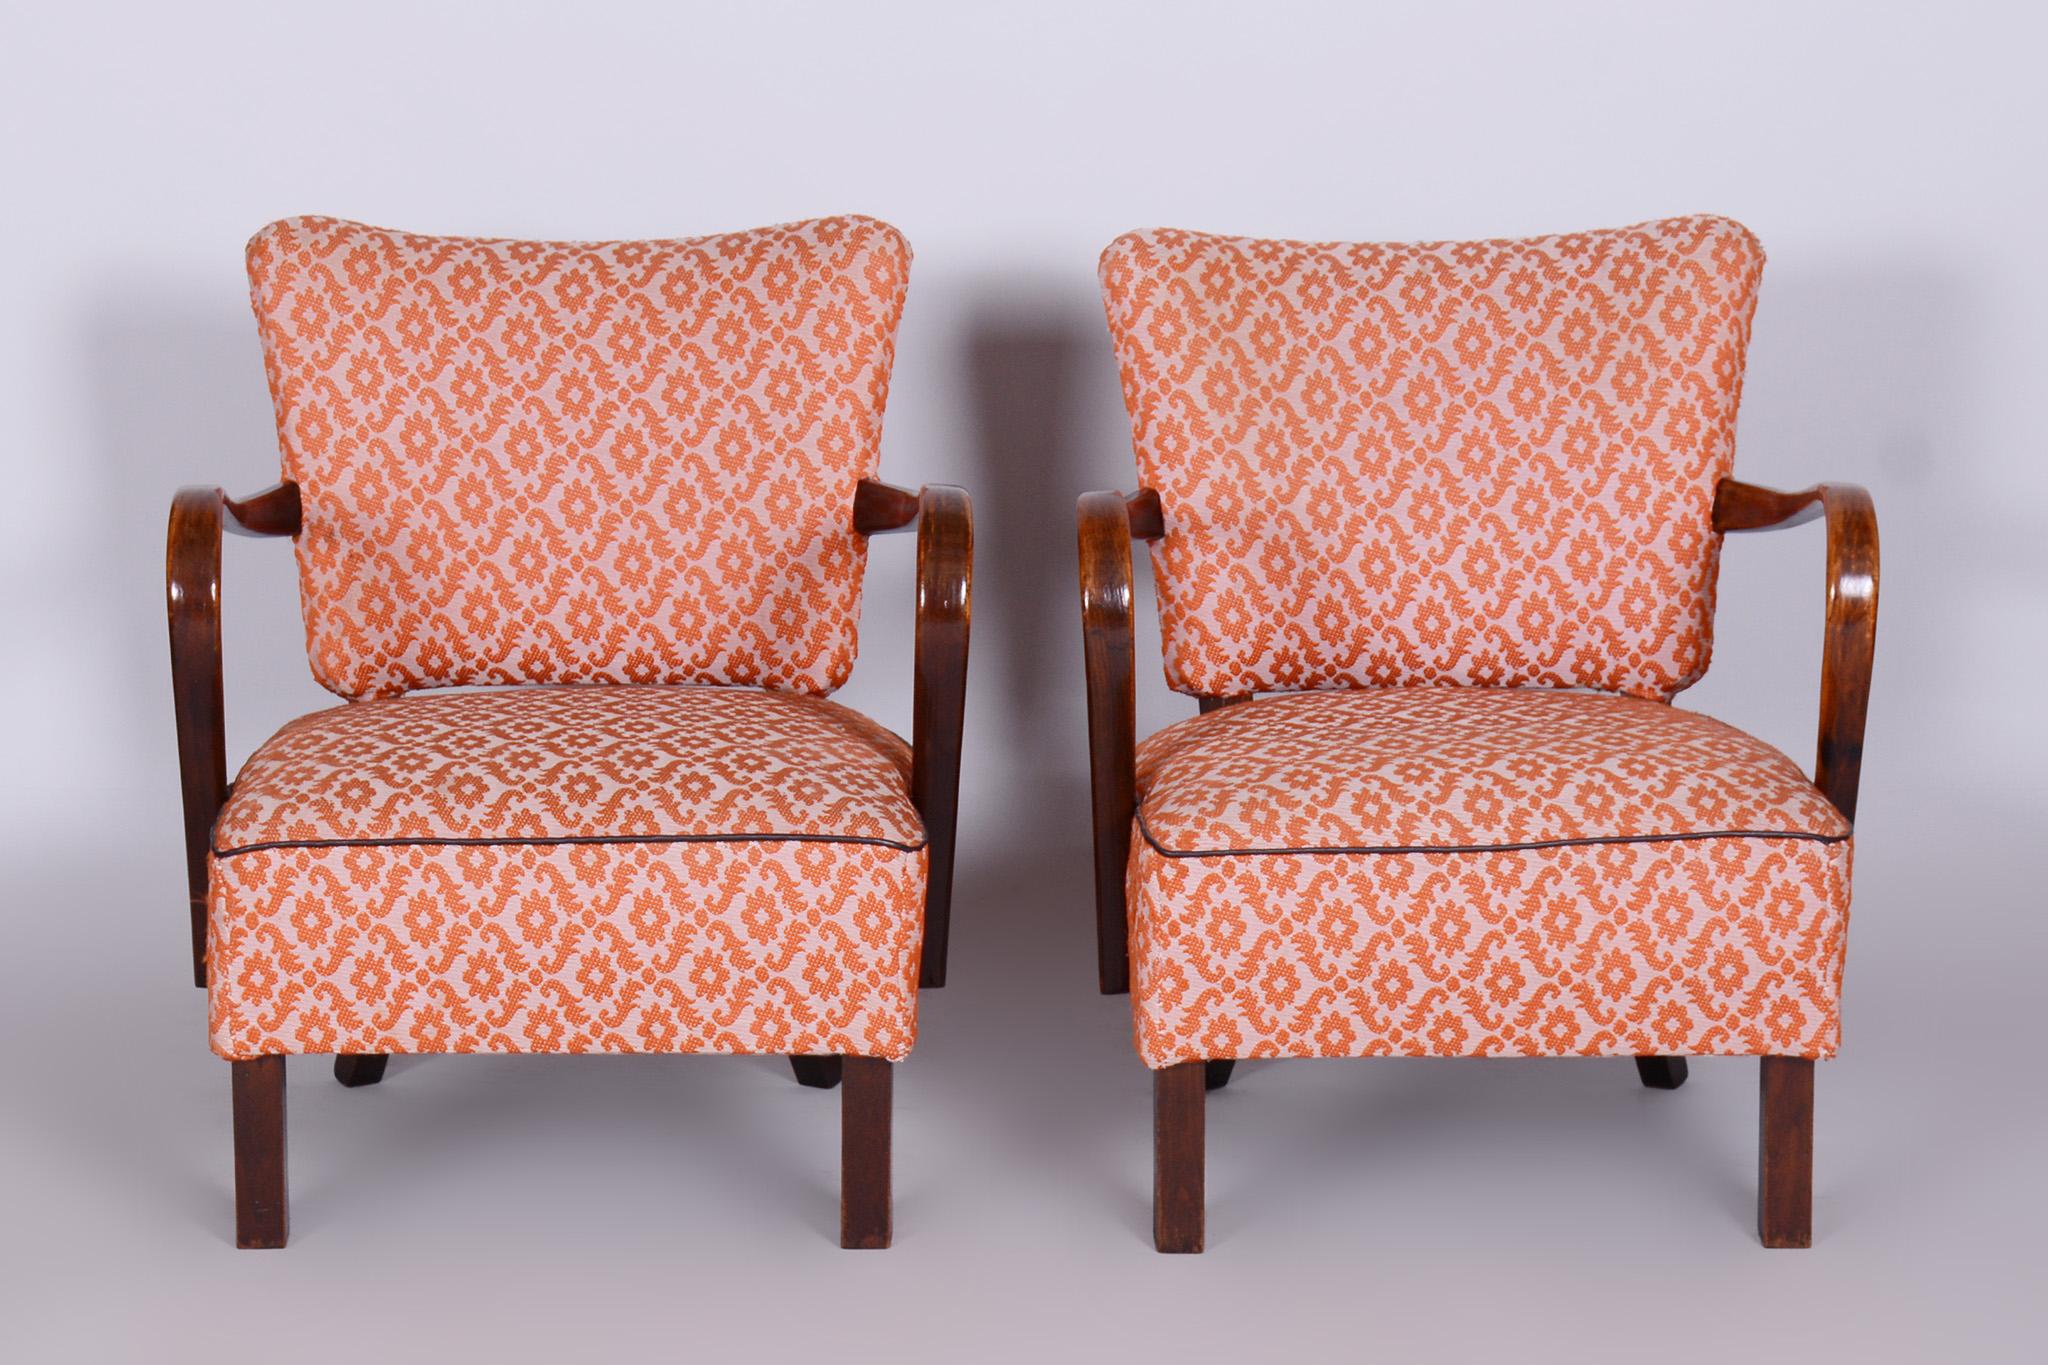 Paire de fauteuils ArtDeco en hêtre 

Période : 1930-1939
Source : Tchécoslovaquie

Etat original très bien conservé.
Un vernis ravivé.
La tapisserie a été nettoyée par des professionnels.